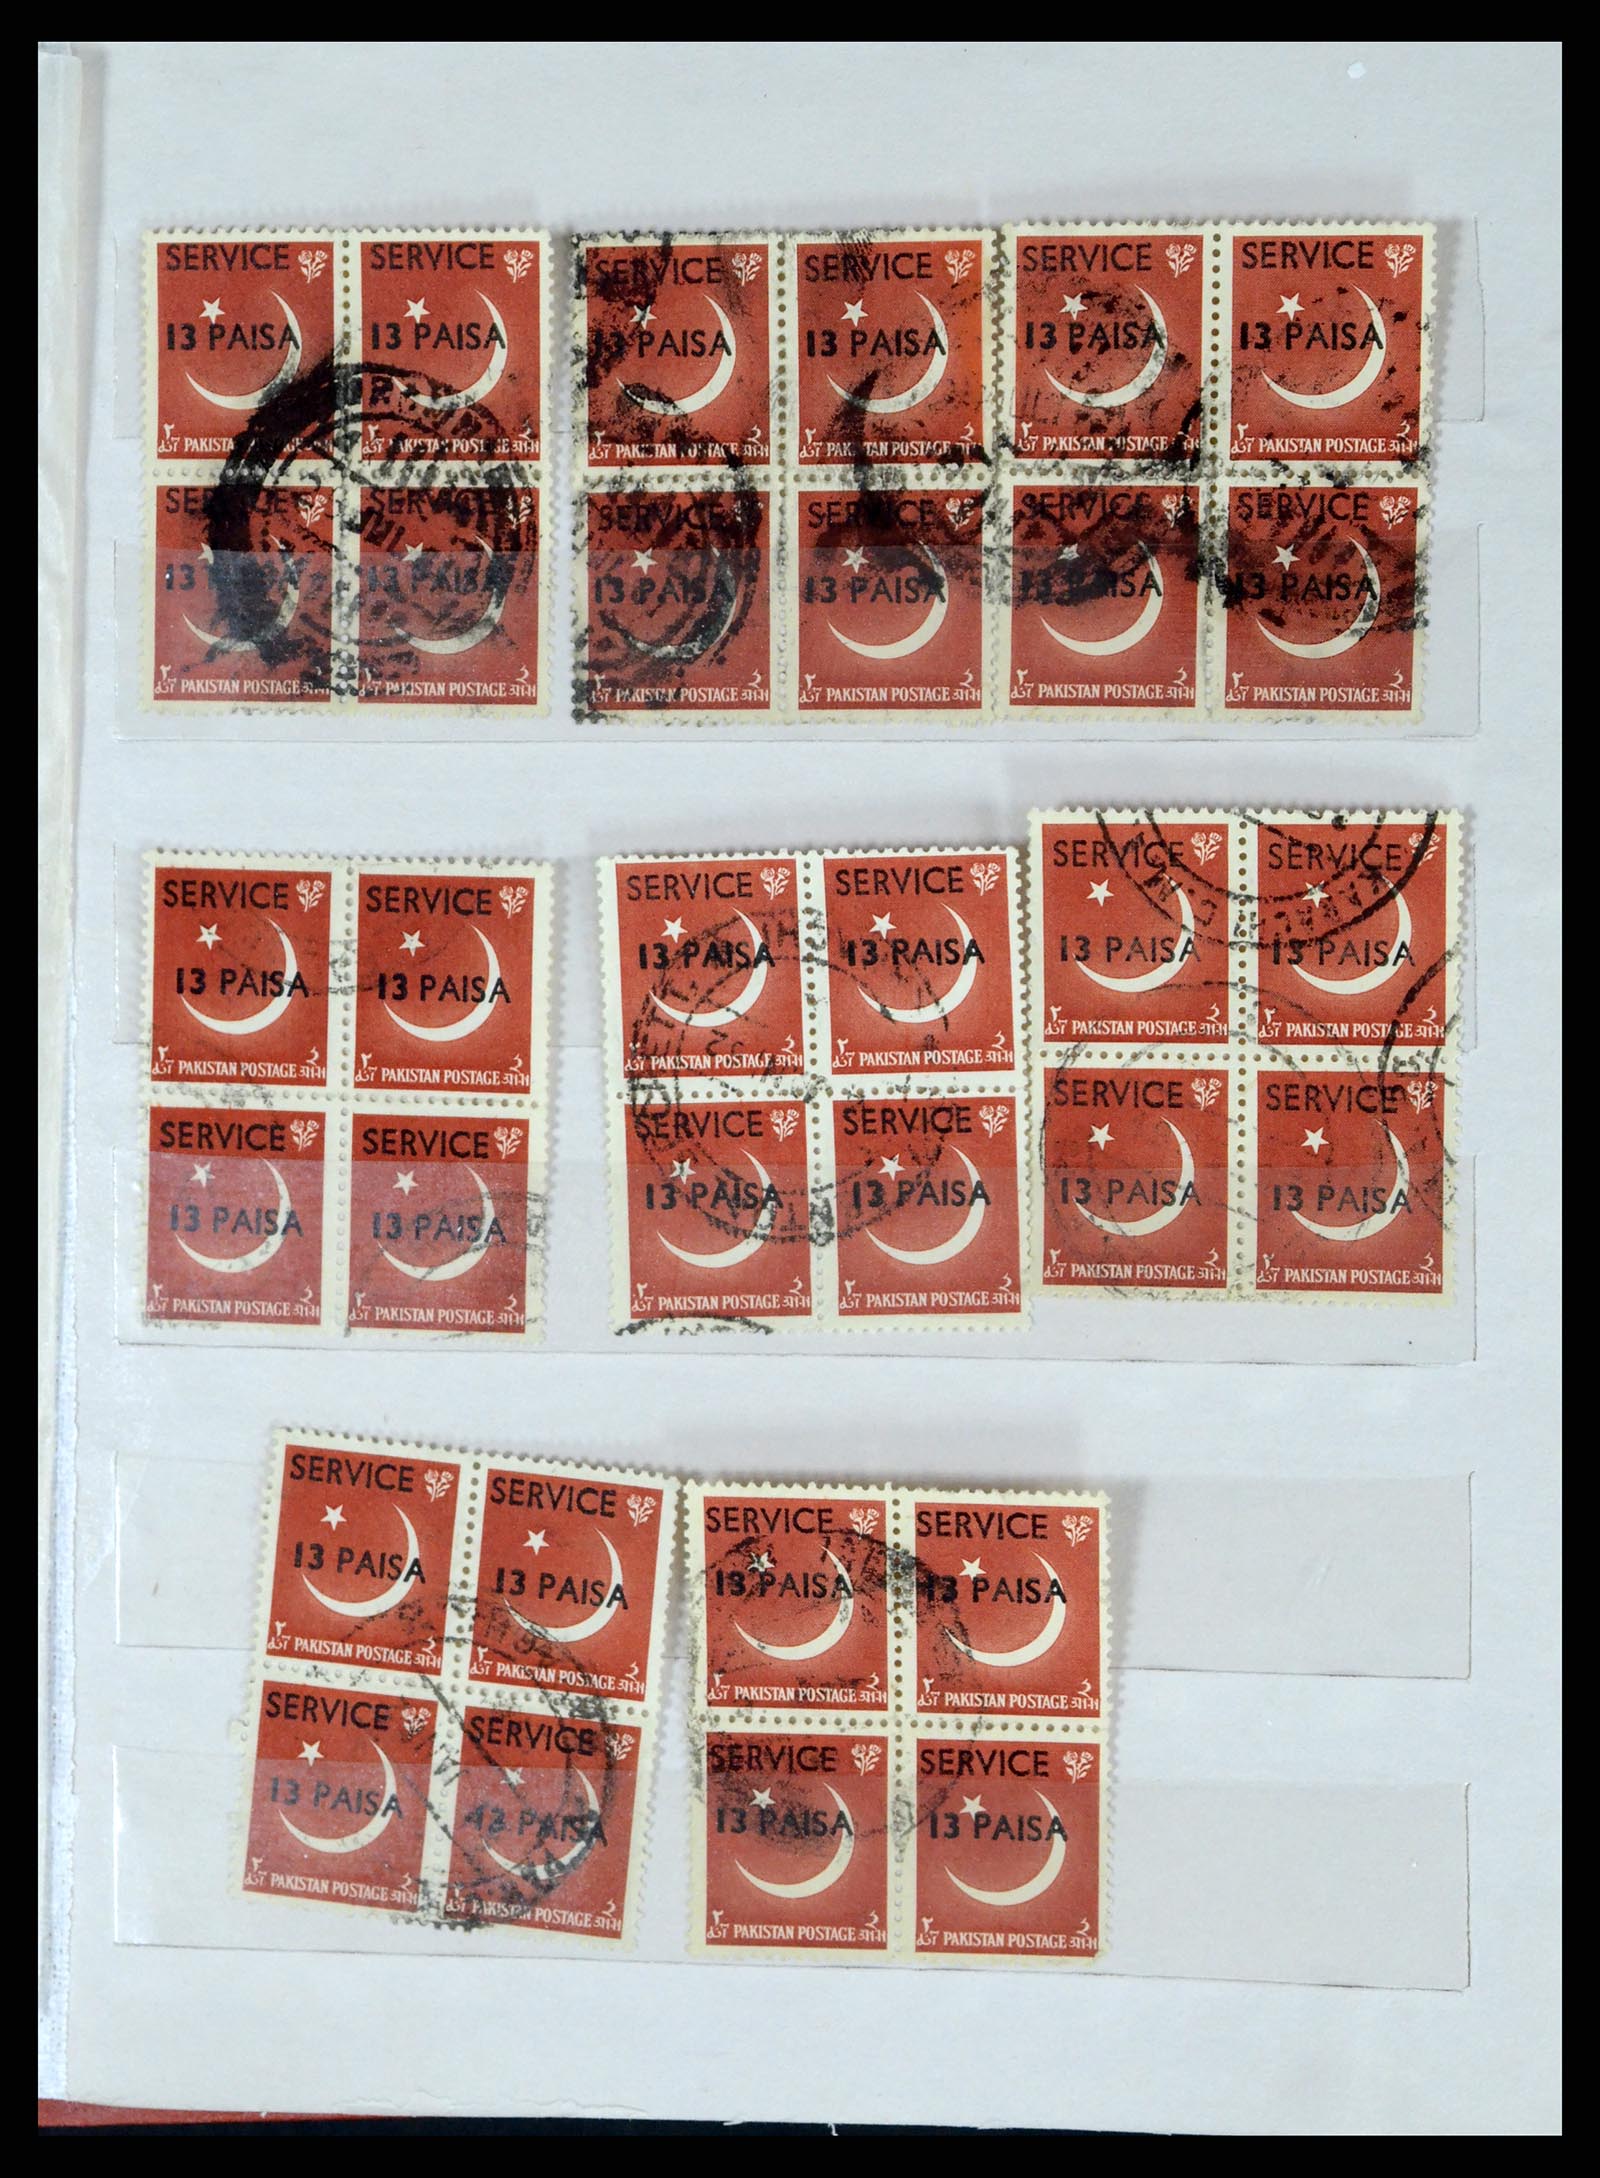 37619 321 - Stamp collection 37619 Pakistan/Bangladesh 1947-2000.